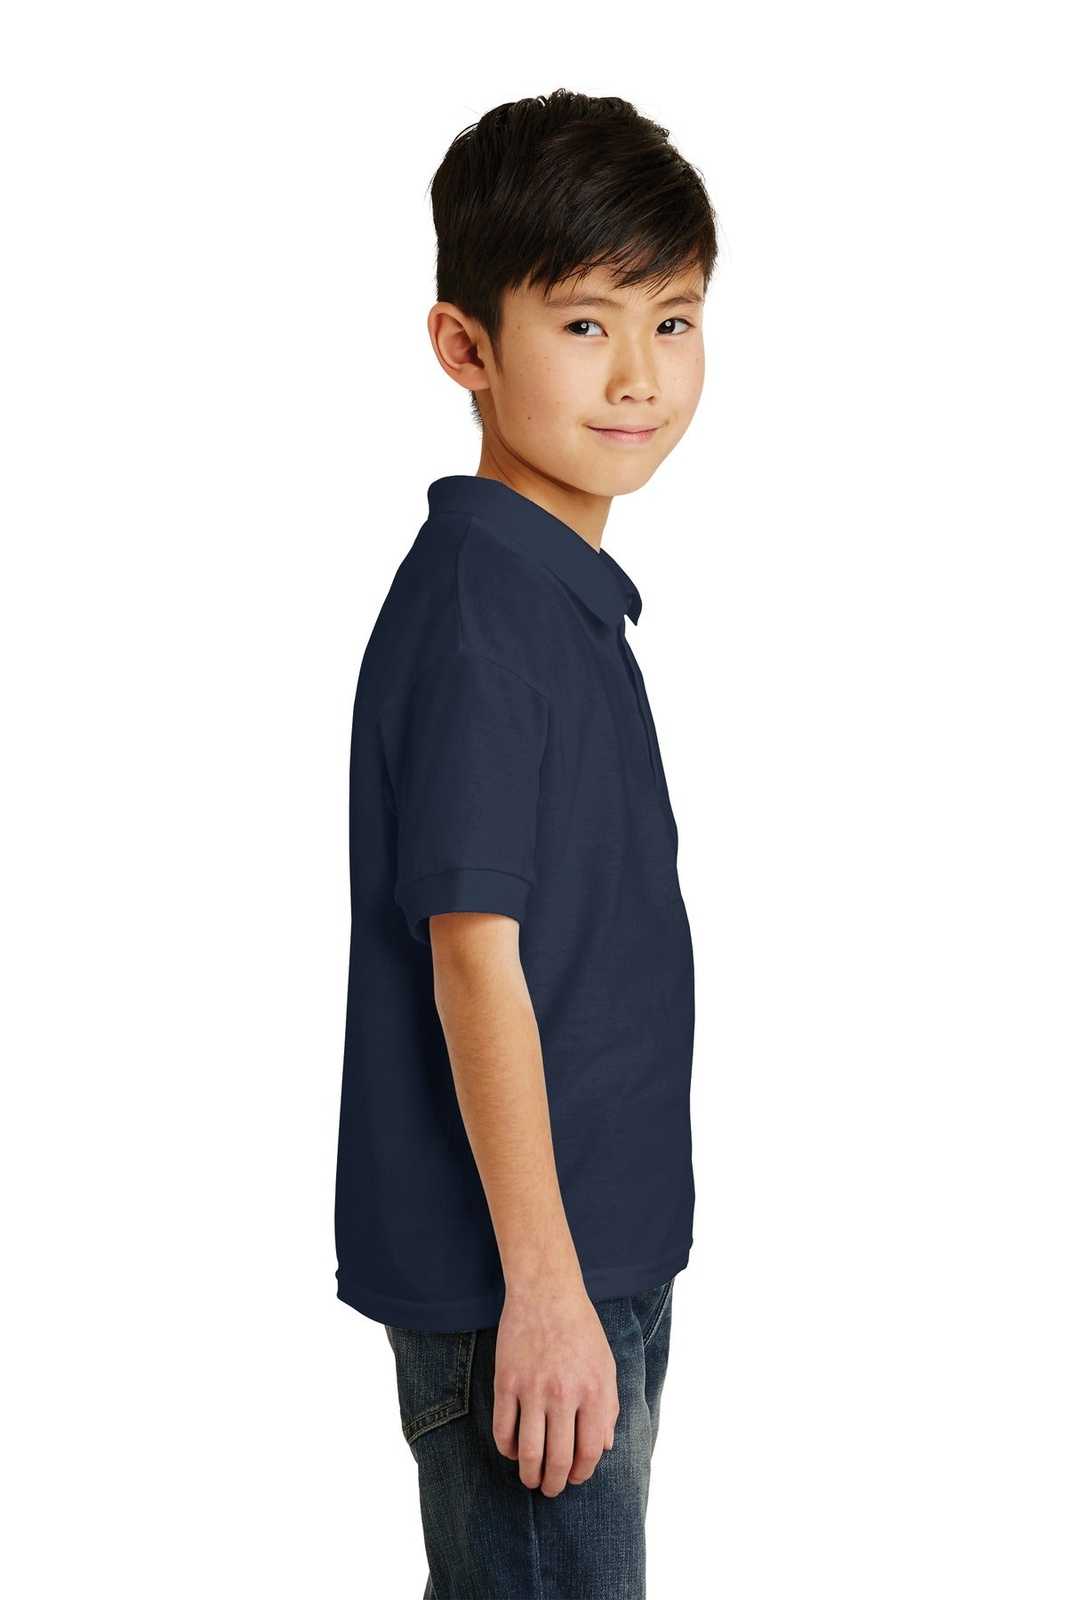 Gildan 8800B Youth Dryblend 6-Ounce Jersey Knit Sport Shirt - Navy - HIT a Double